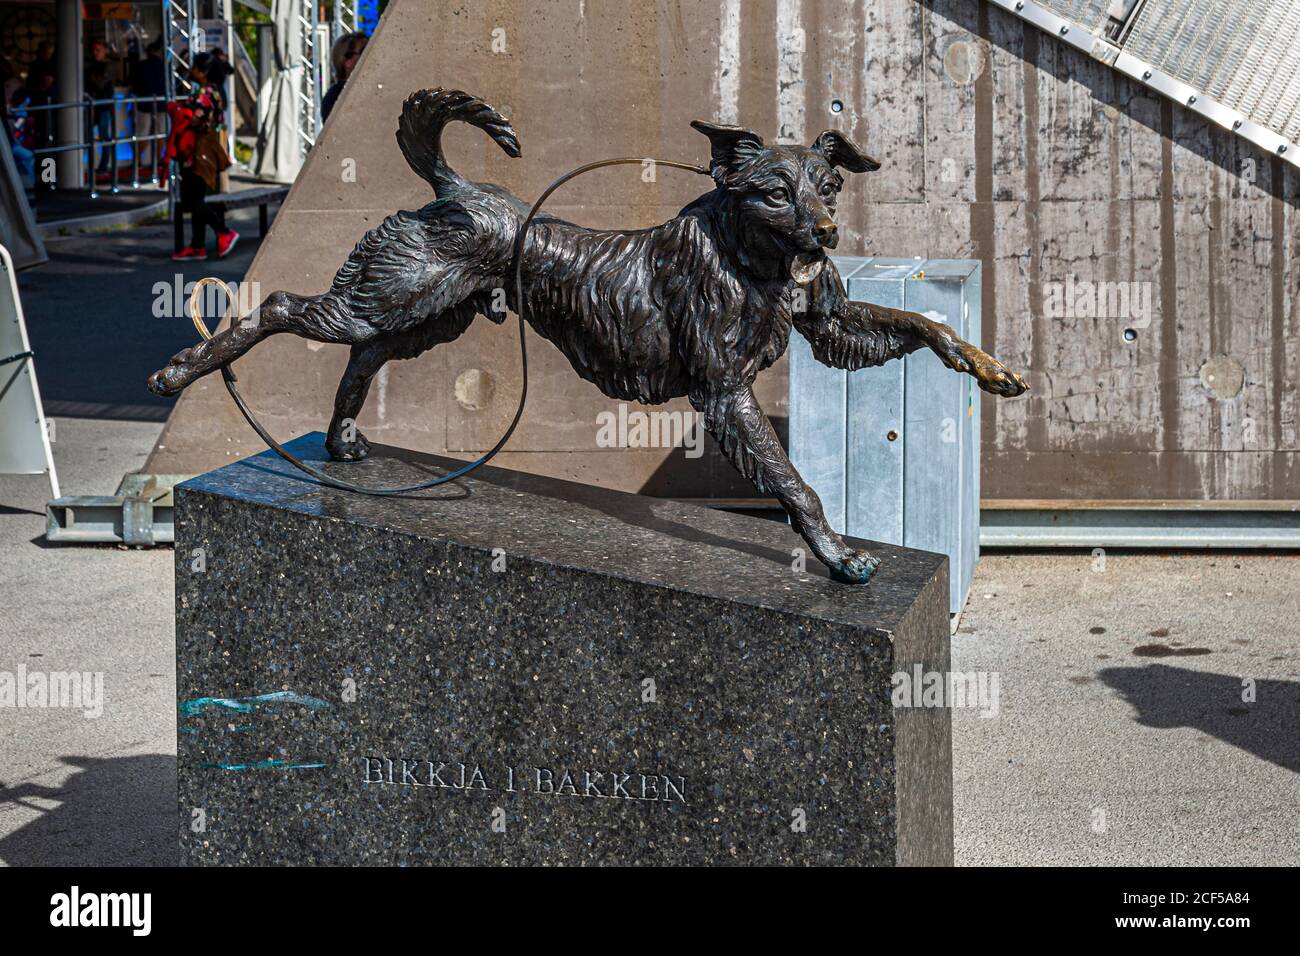 Bikkja i bakken sculpture de chien par Elene Engelsen à Holmenkollbakken Saut à ski à Holmenkollen Oslo Norvège Banque D'Images